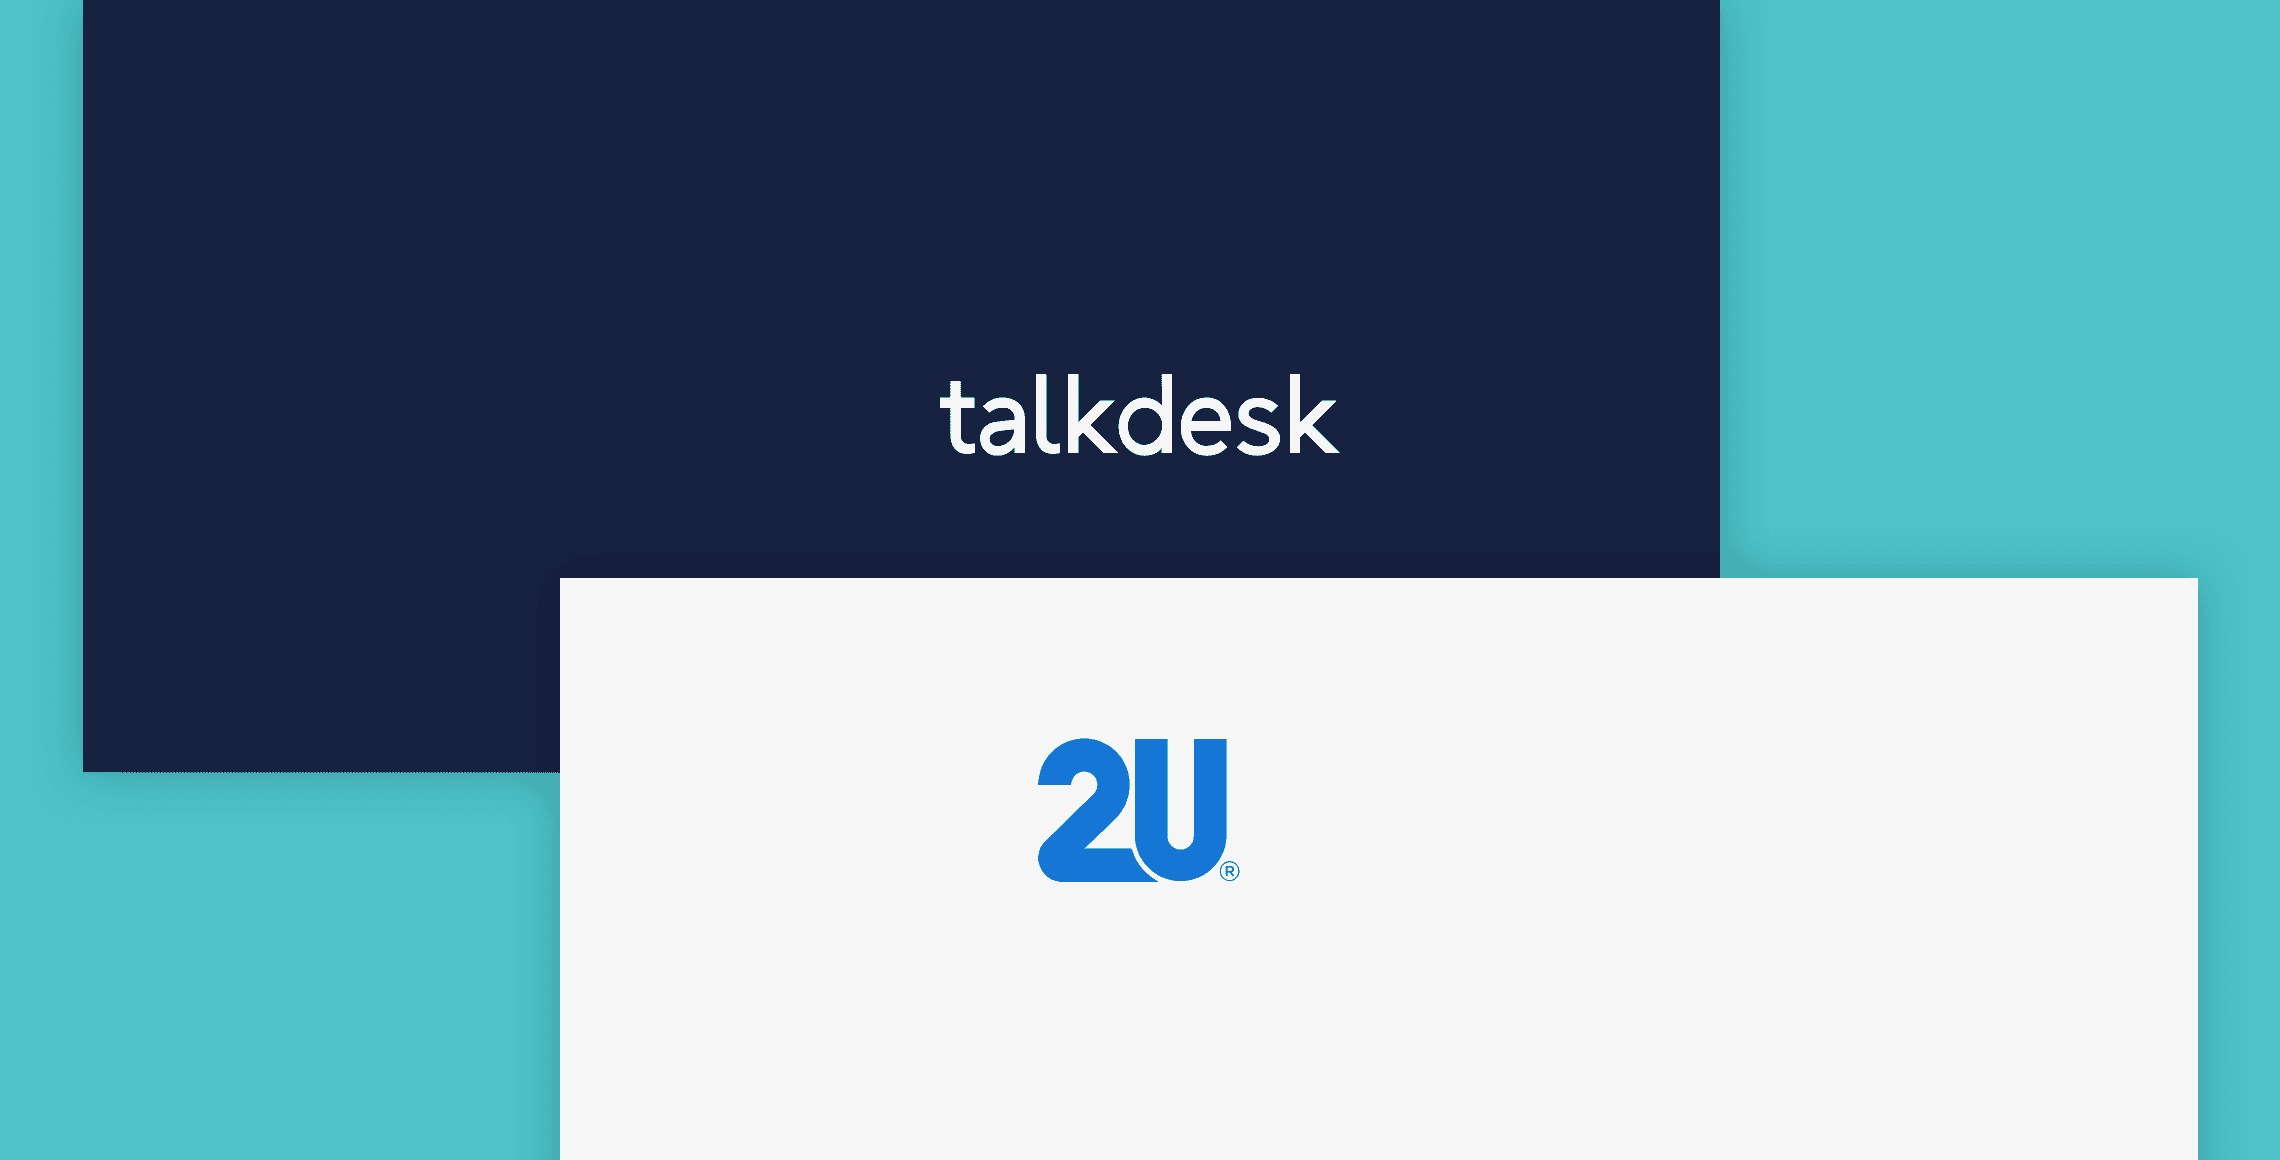 Talkdesk and 2U